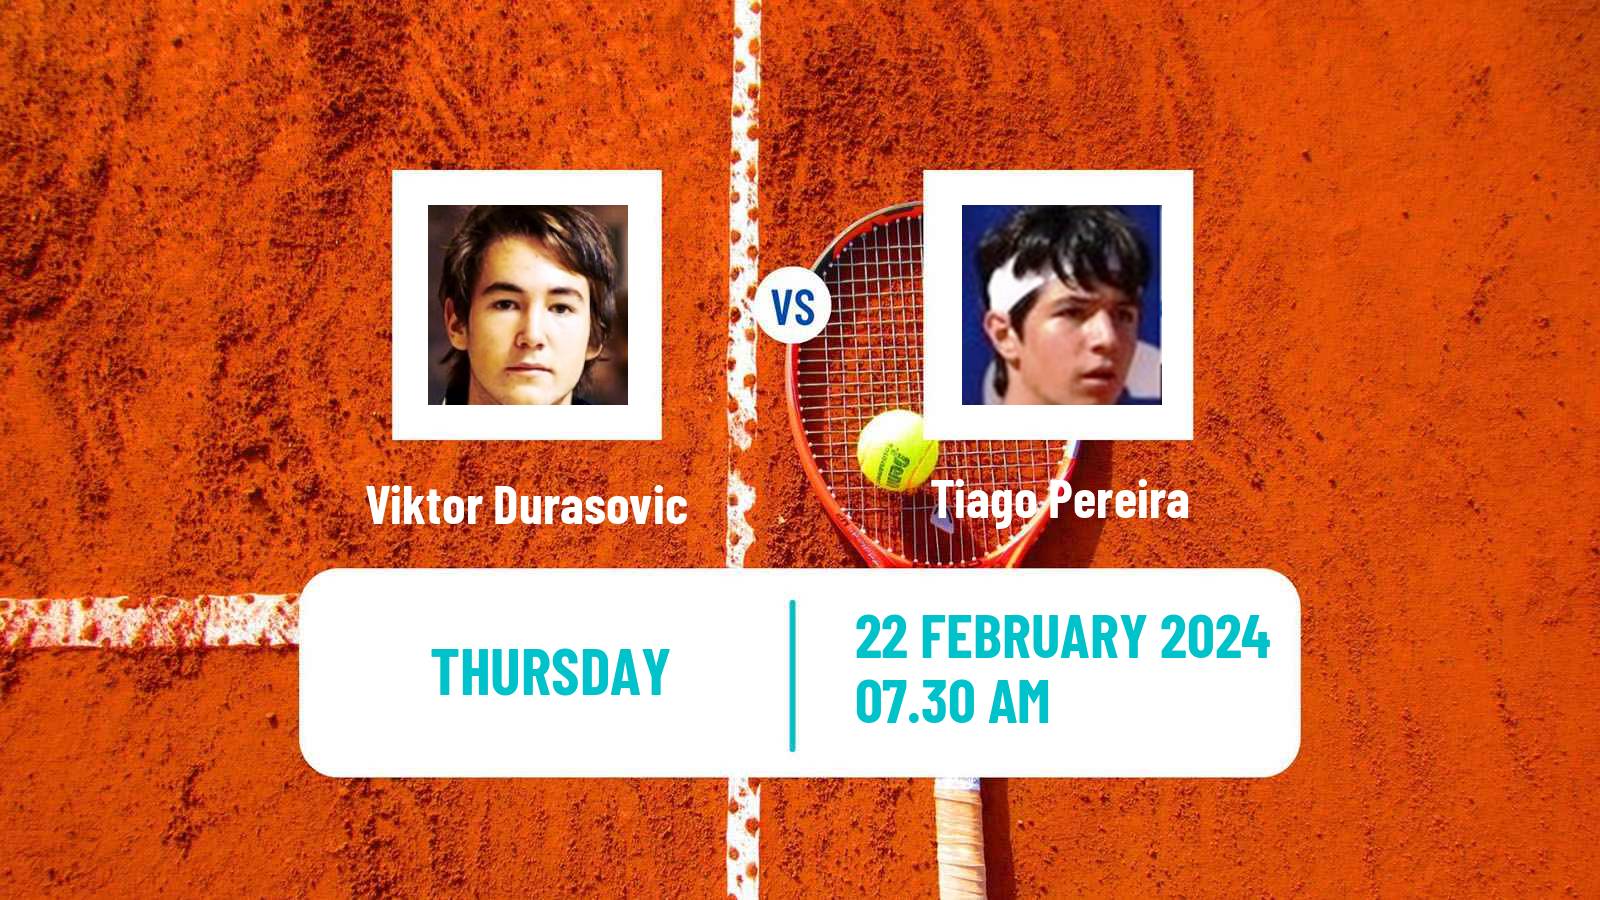 Tennis ITF M25 Vila Real De Santo Antonio 2 Men Viktor Durasovic - Tiago Pereira